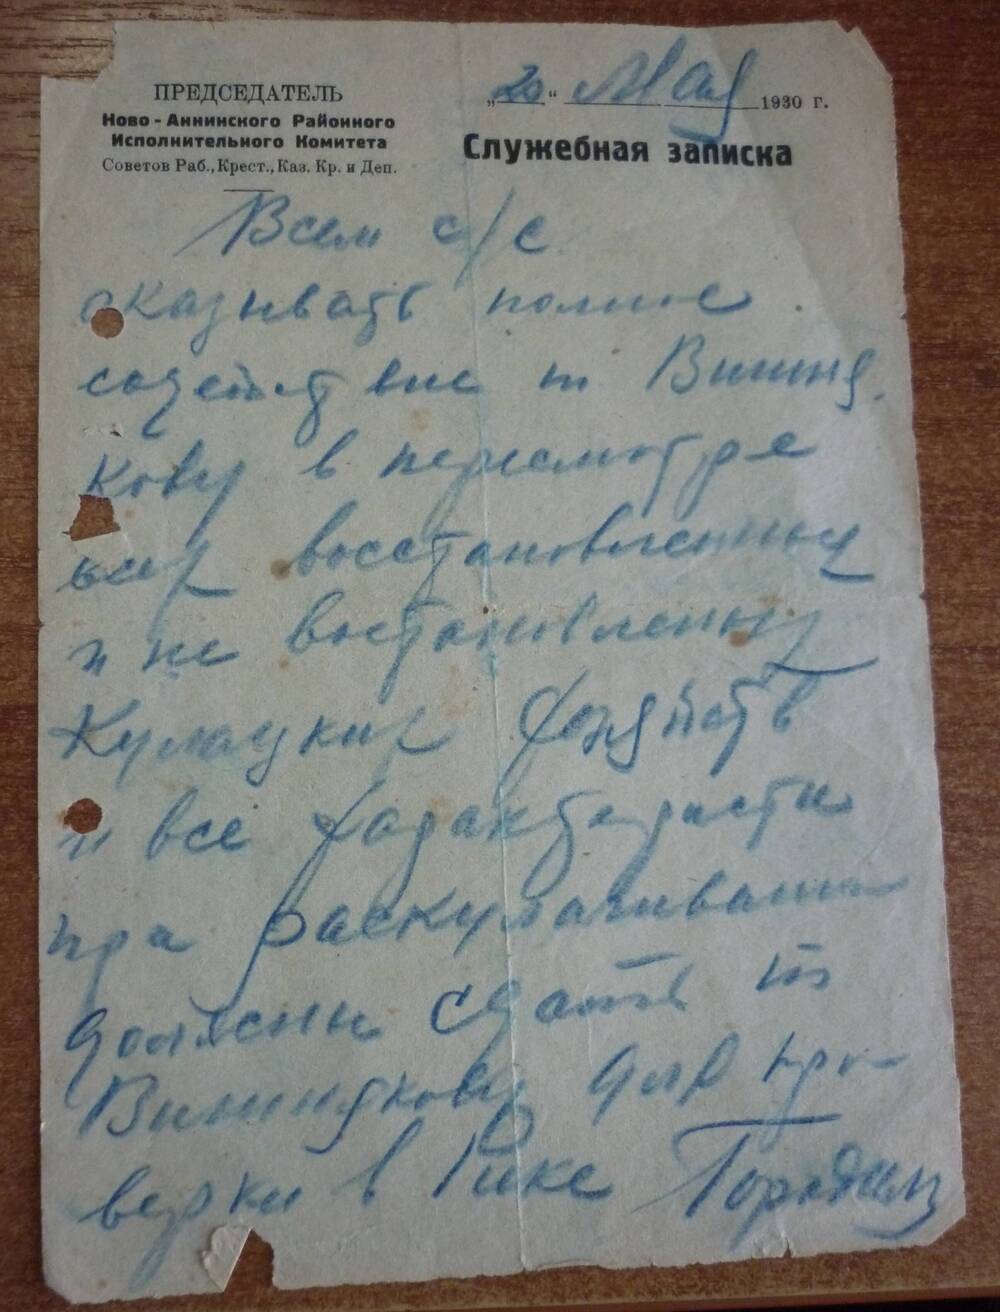 Служебная записка рукописная на бланке о праве Вишнякову пересматривать восстановленные  кулацкие  хозяйства. 20мая  1930г.